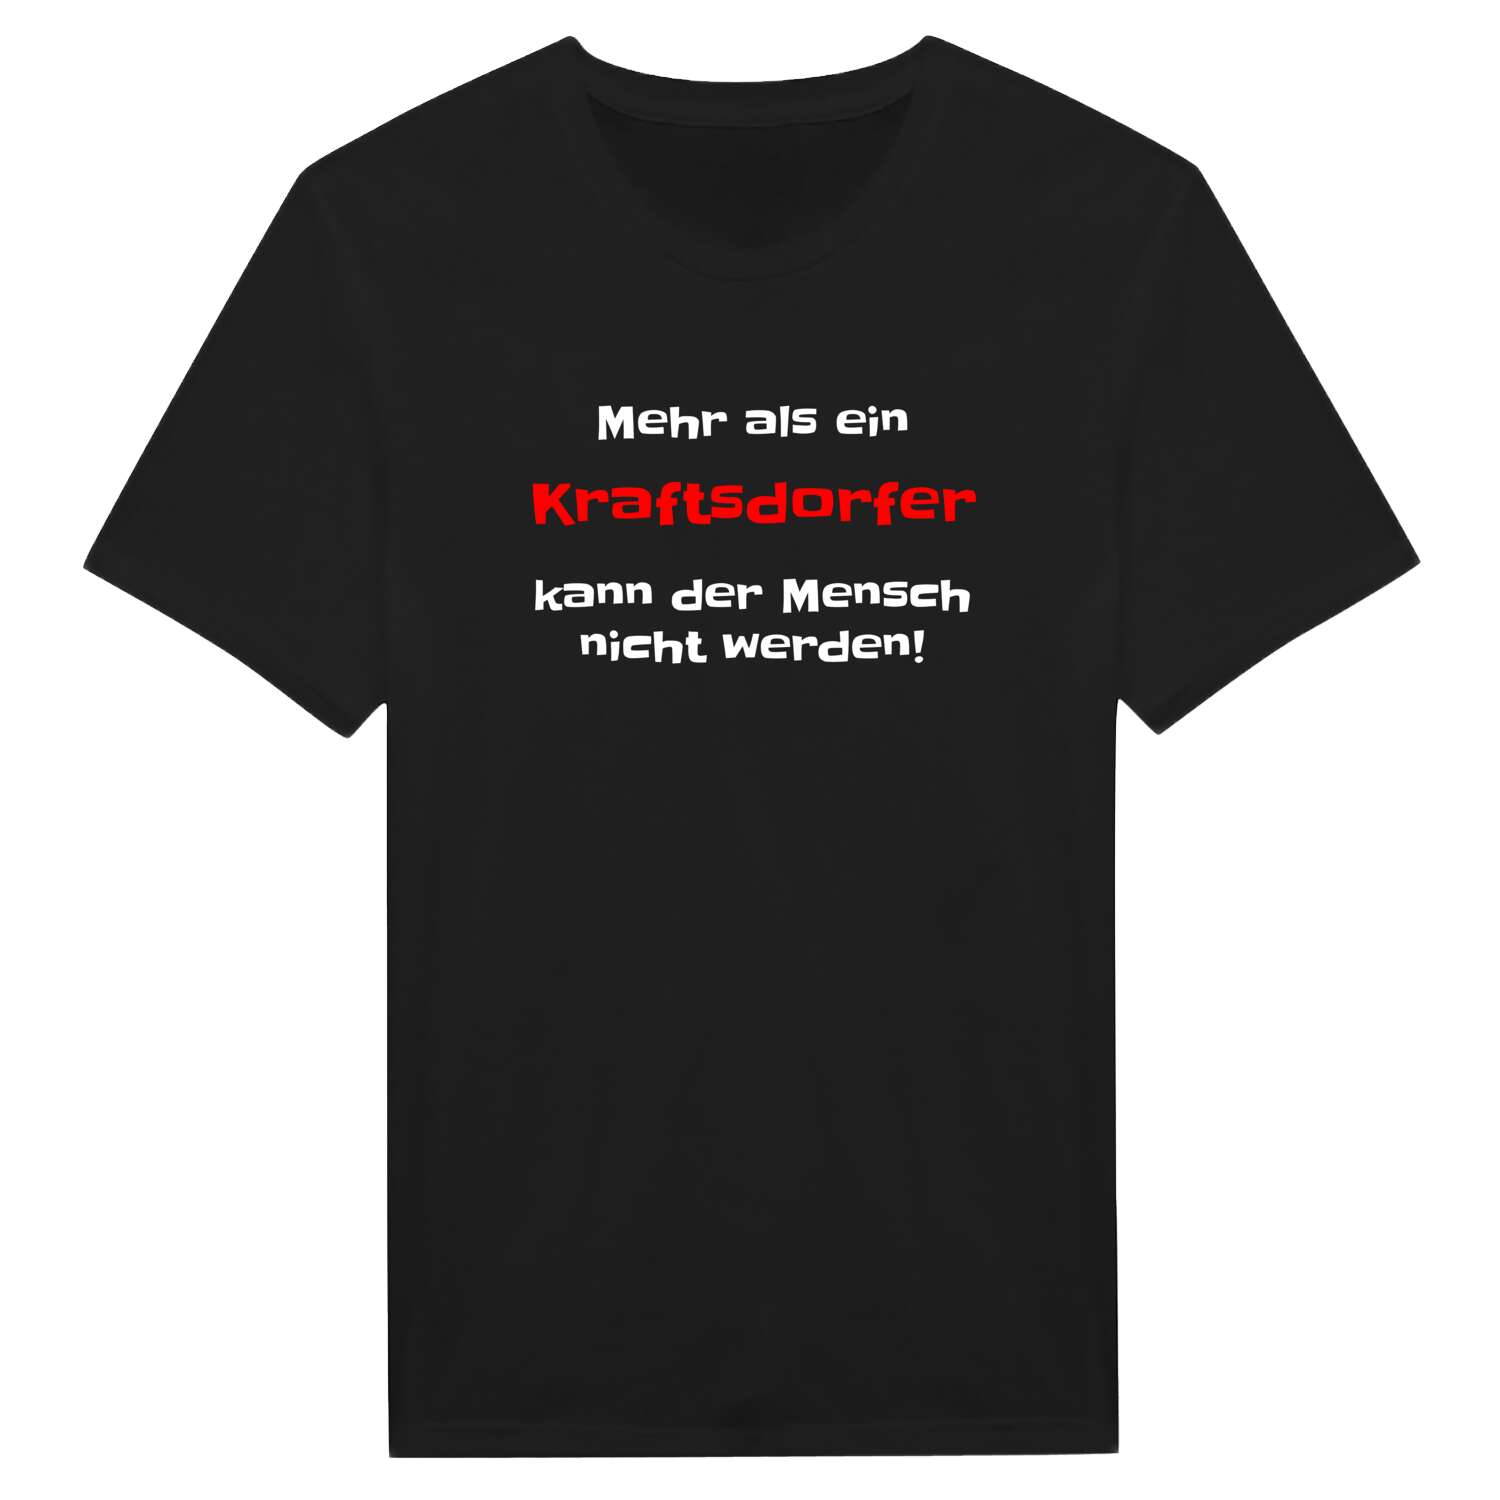 Kraftsdorf T-Shirt »Mehr als ein«